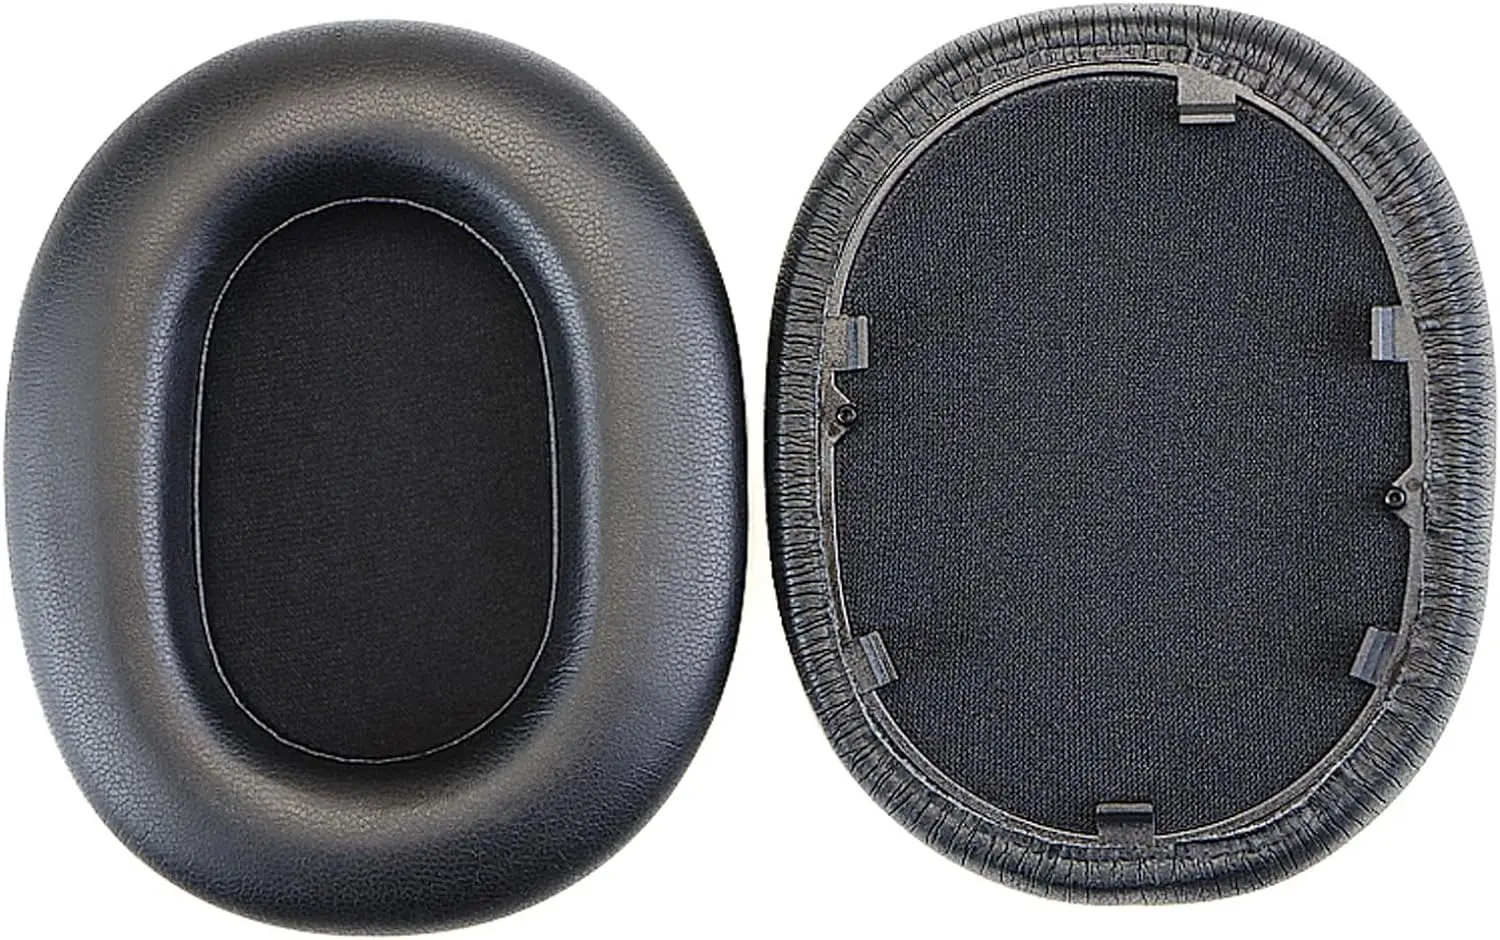 Замена амбушюр, наушники Sony WH-1000XM5 с шумоподавлением, амбушюры с шумоизоляцией memory foam (протеиновая кожа